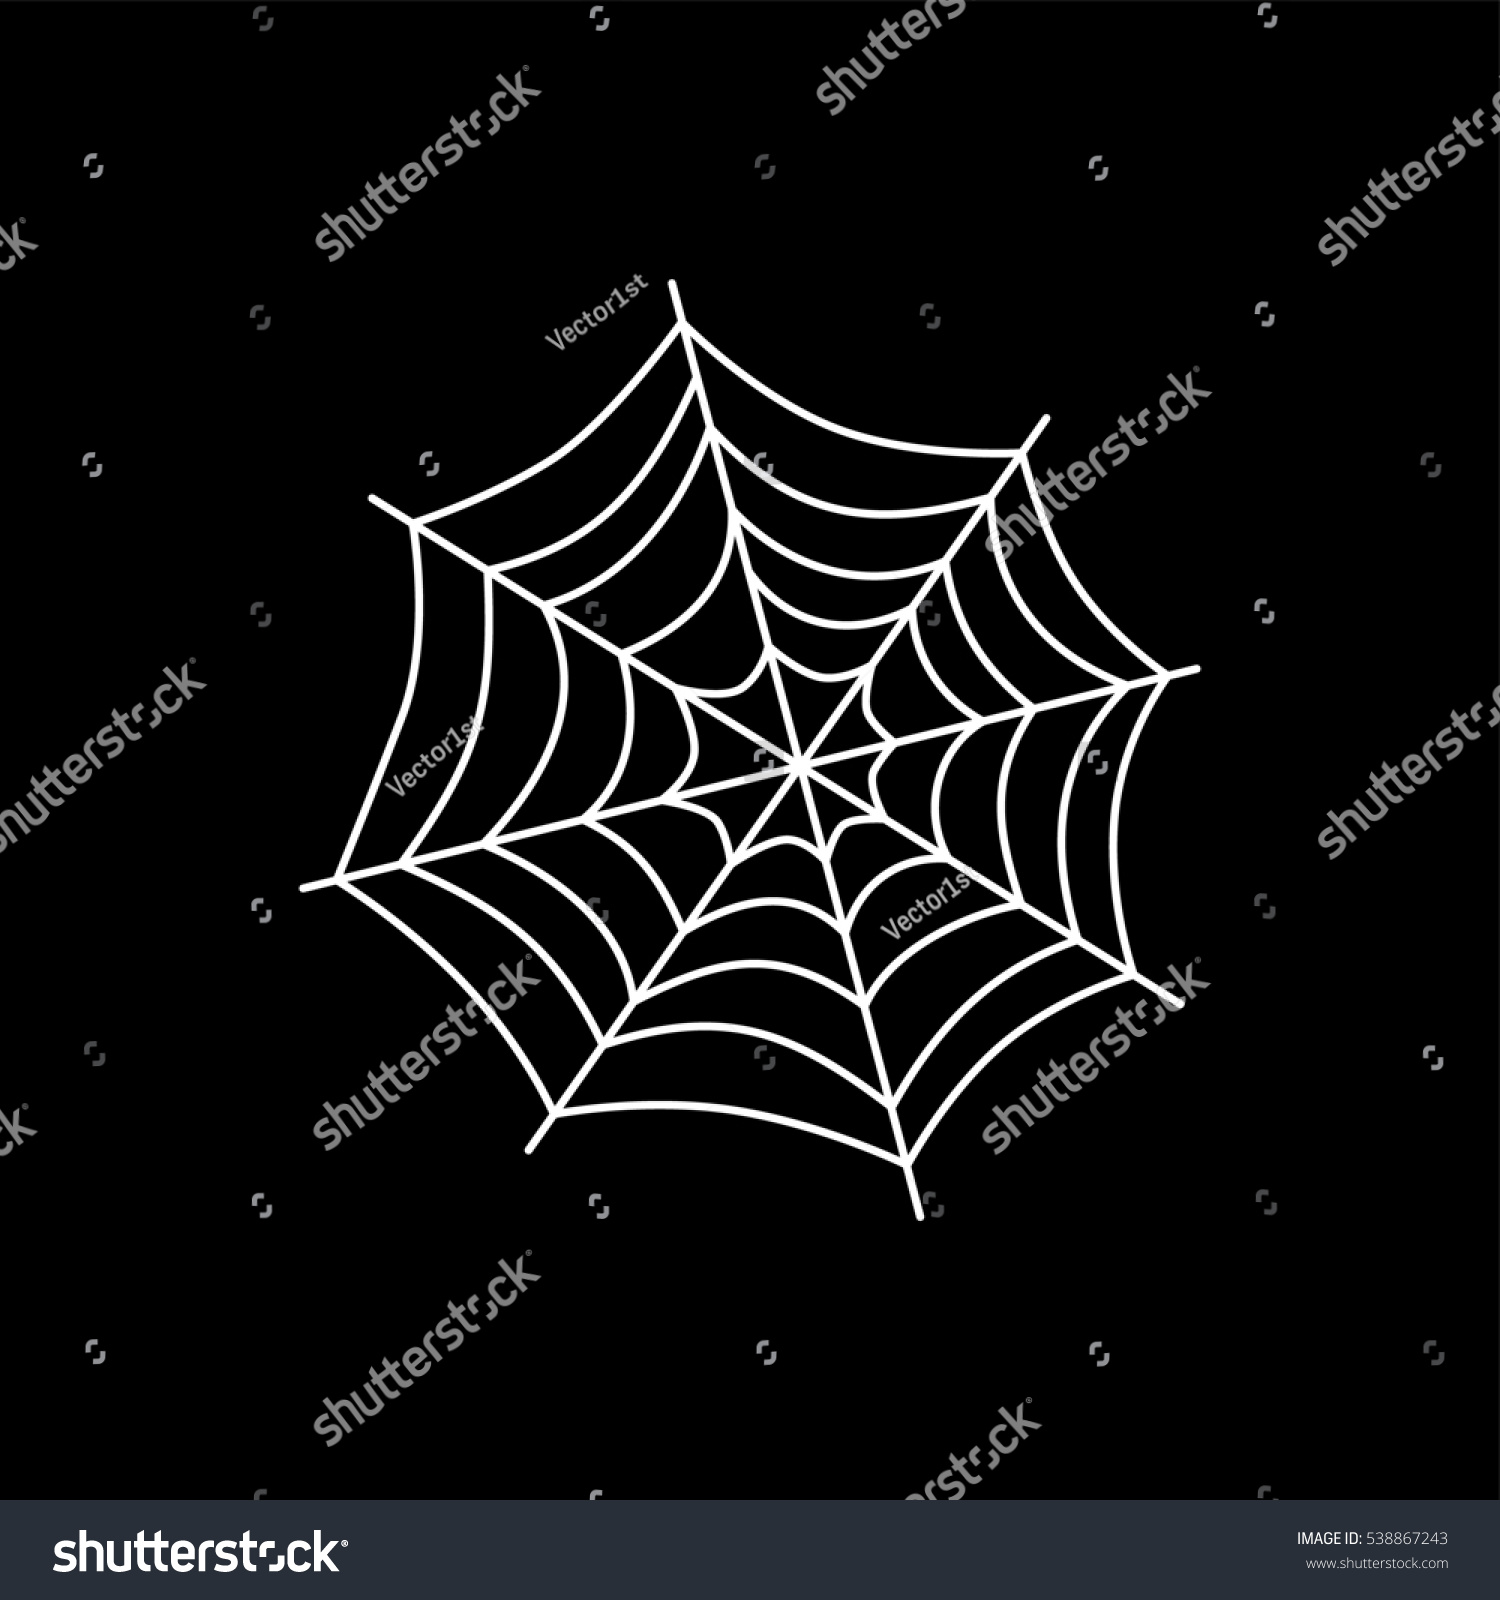 Spider Web Art Theme Stock Illustration 538867243 - Shutterstock